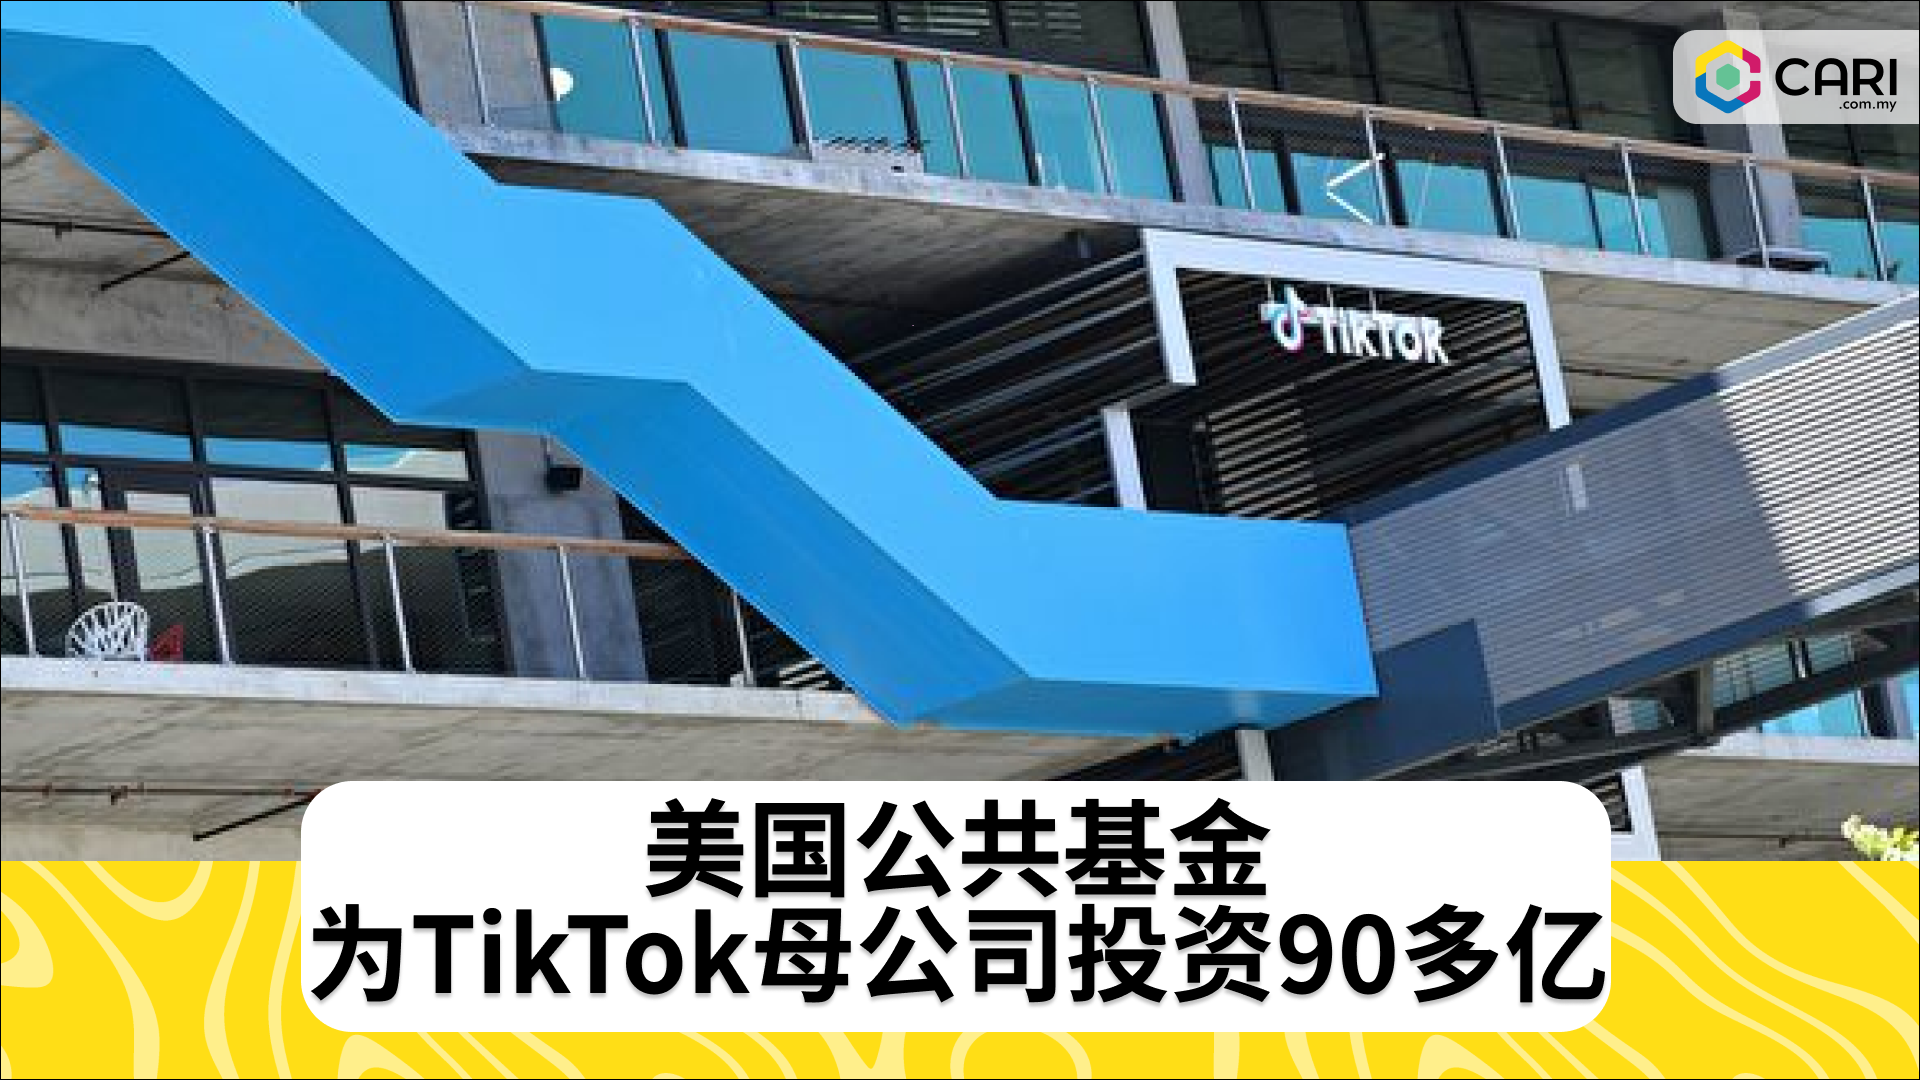 美国公共基金为TikTok母公司投资90多亿